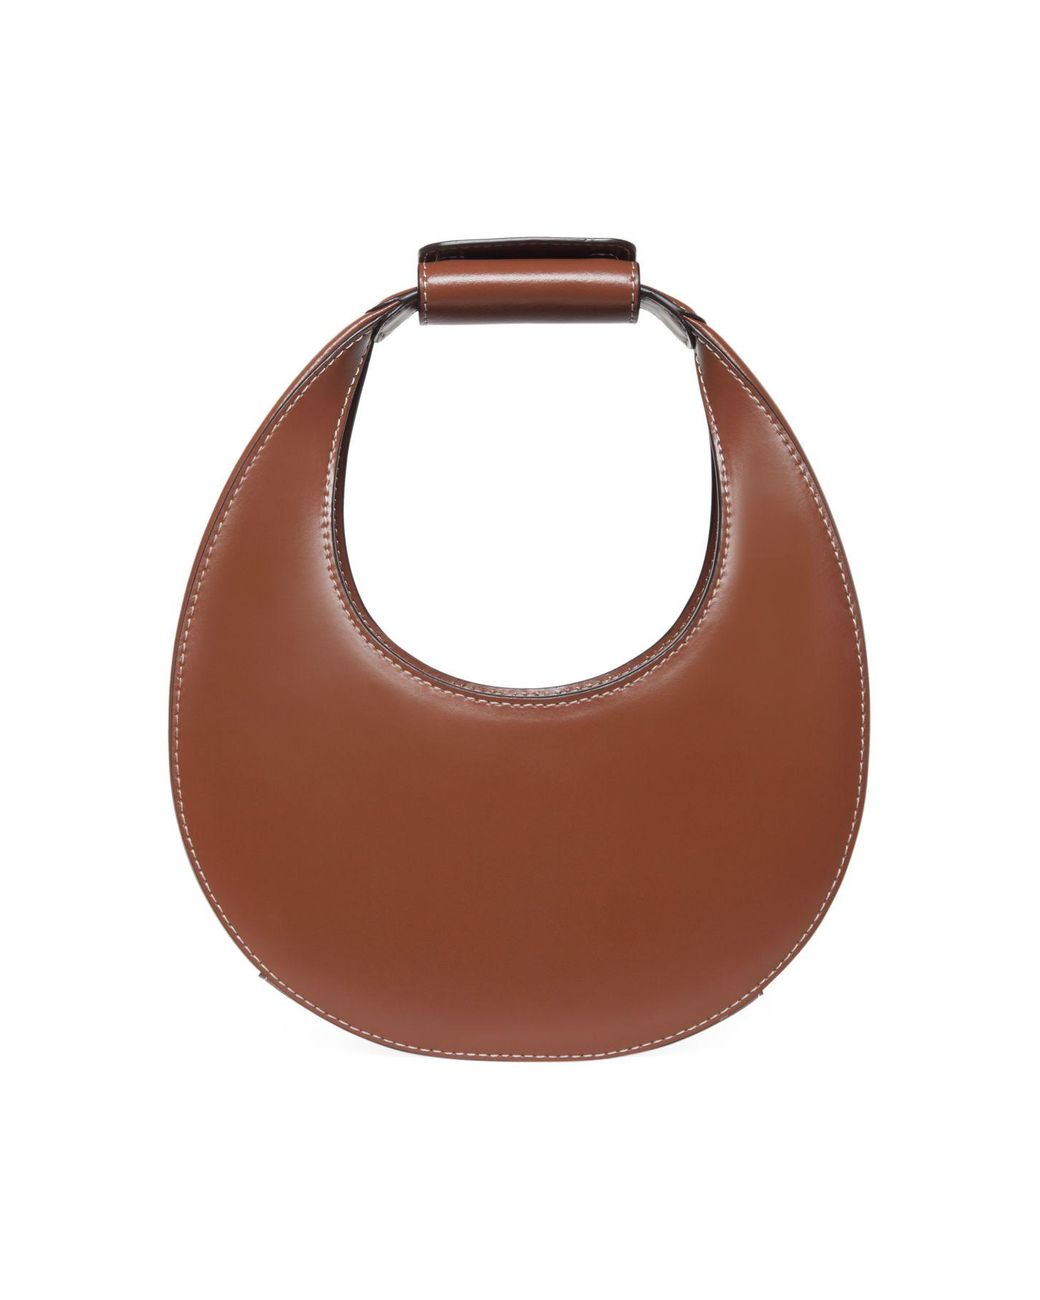 STAUD Mini Moon Leather Hobo Bag in Tan (Brown) - Lyst